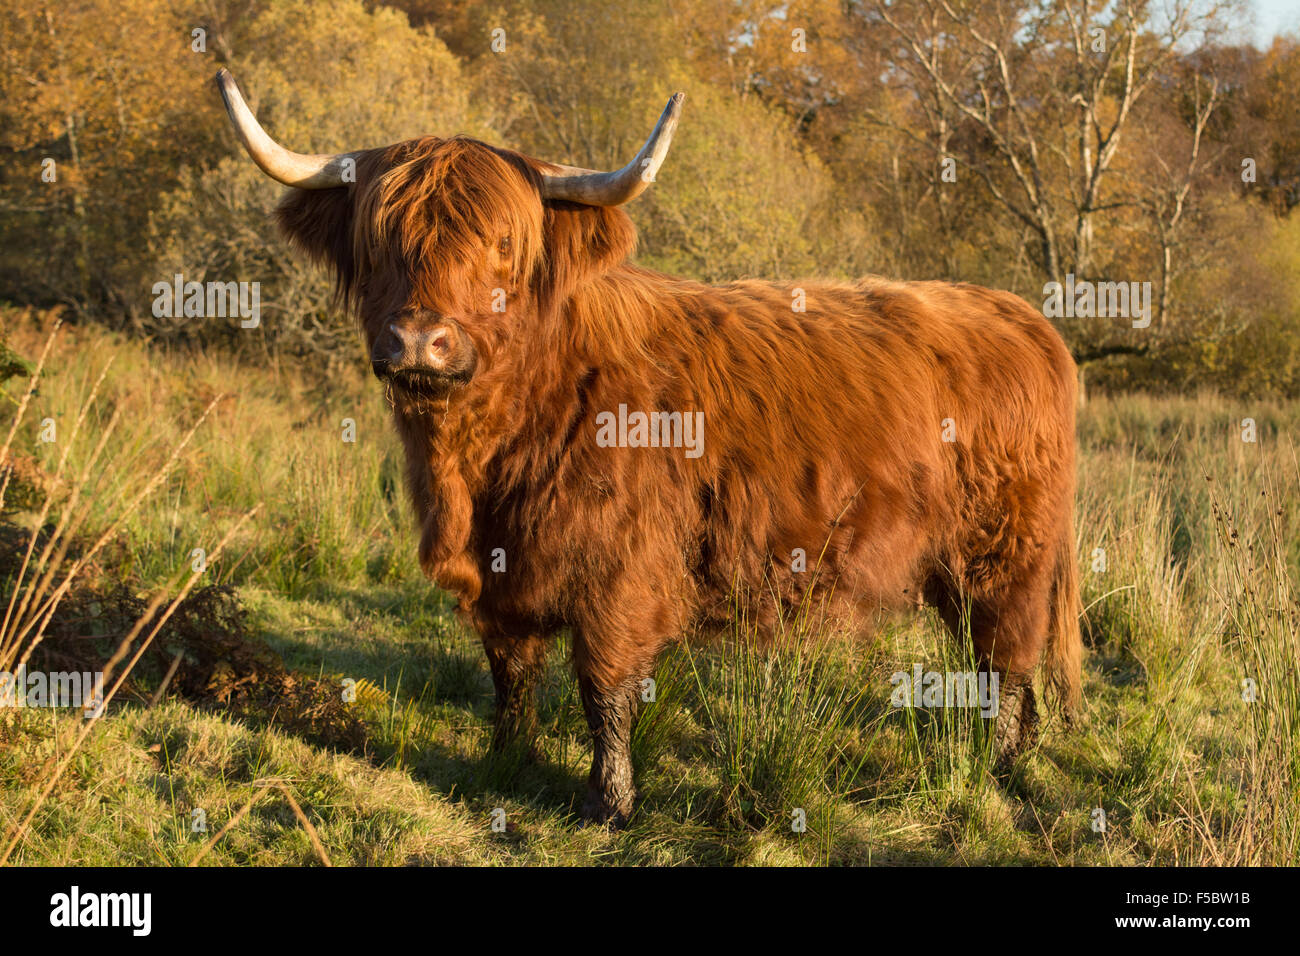 Loch Katrine, Escocia, Reino Unido - 1 de noviembre de 2015: el clima del Reino Unido: los escudos de la Highland ganado coinciden con los colores de un hermoso día de otoño perfectamente, como ellos mantienen sus ojos en el agricultor, esperando ser alimentado Foto de stock